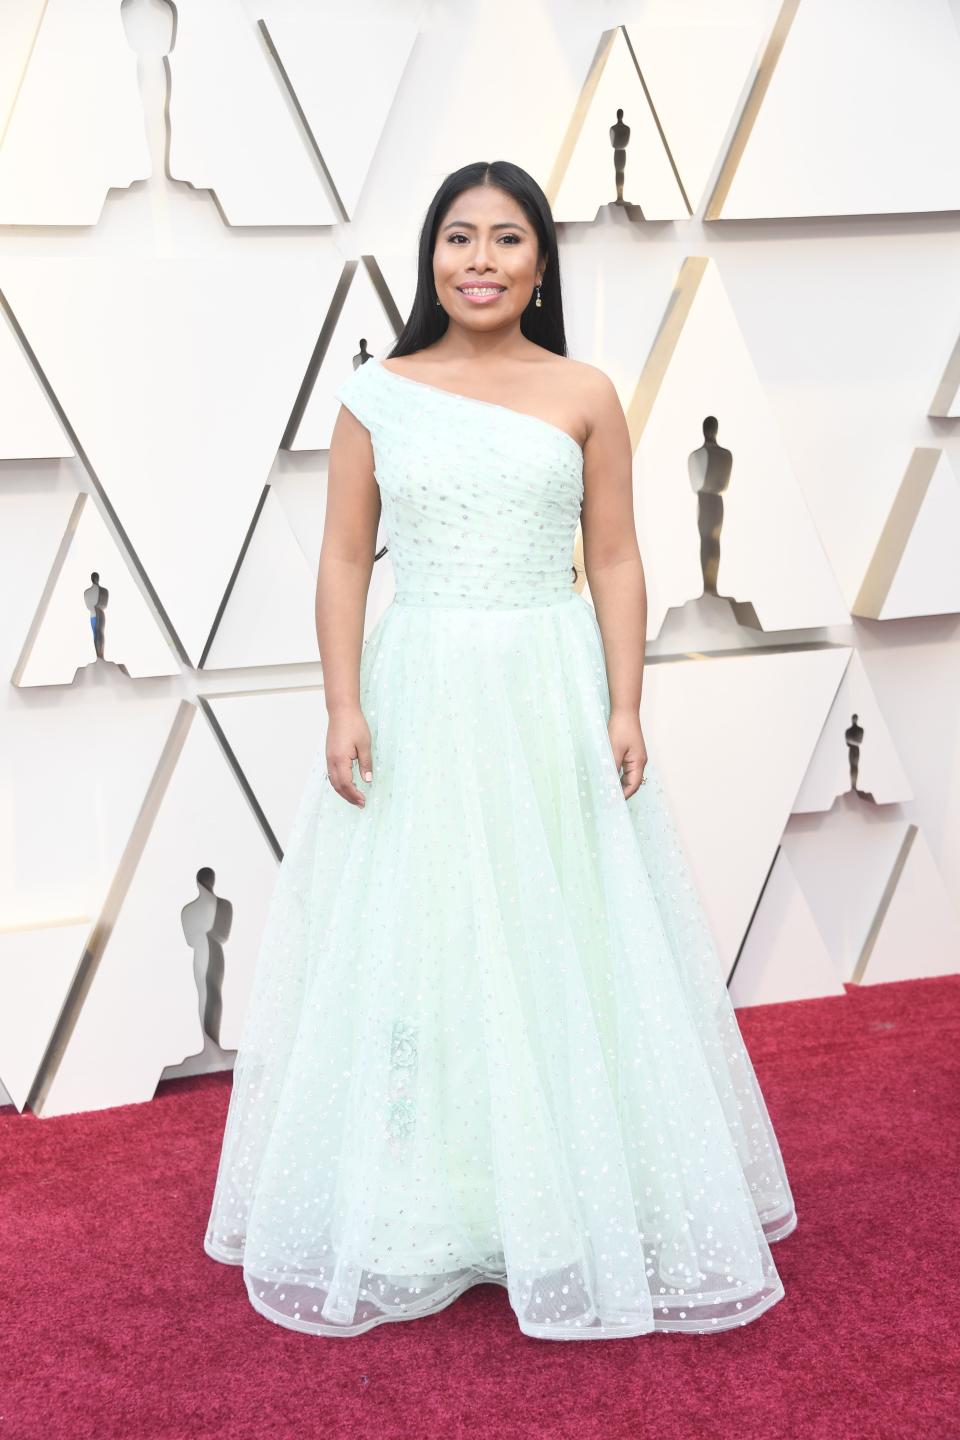 Yalitza Aparicio at the Oscars 2019